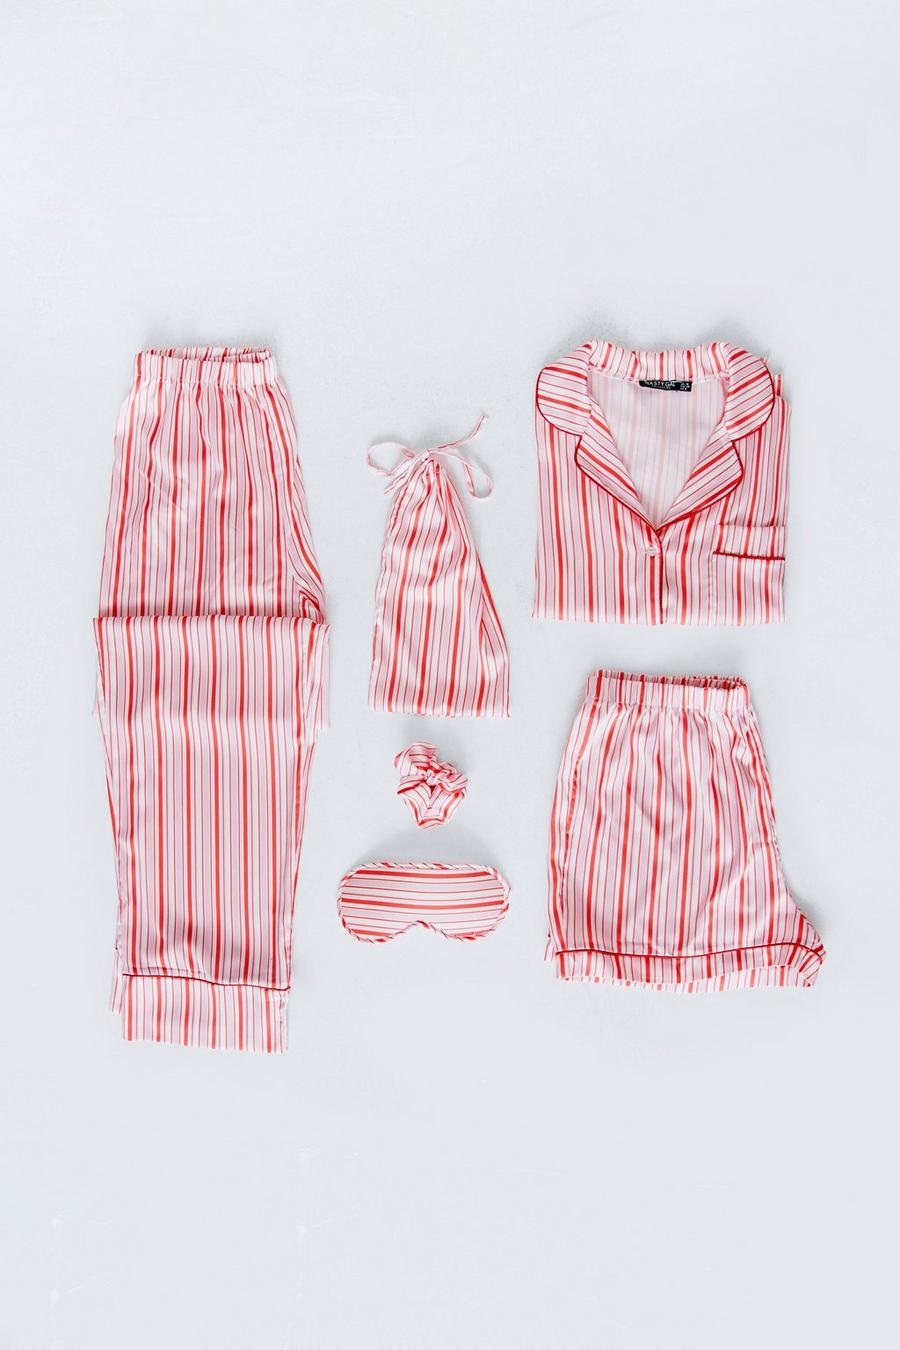 Satin 6 Pc Striped Pajama Set